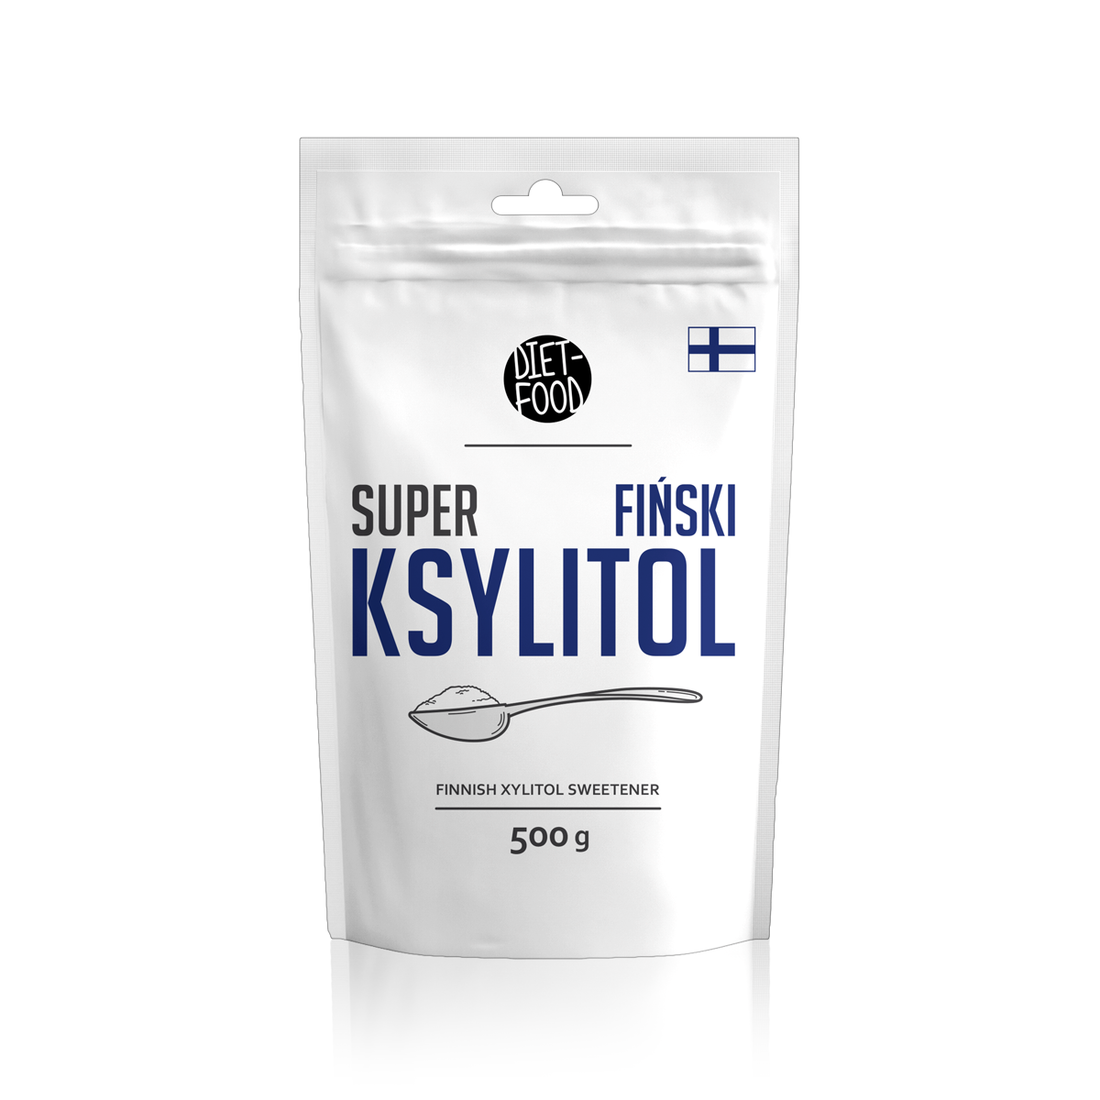 Björksocker Xylitol Finsk 500g